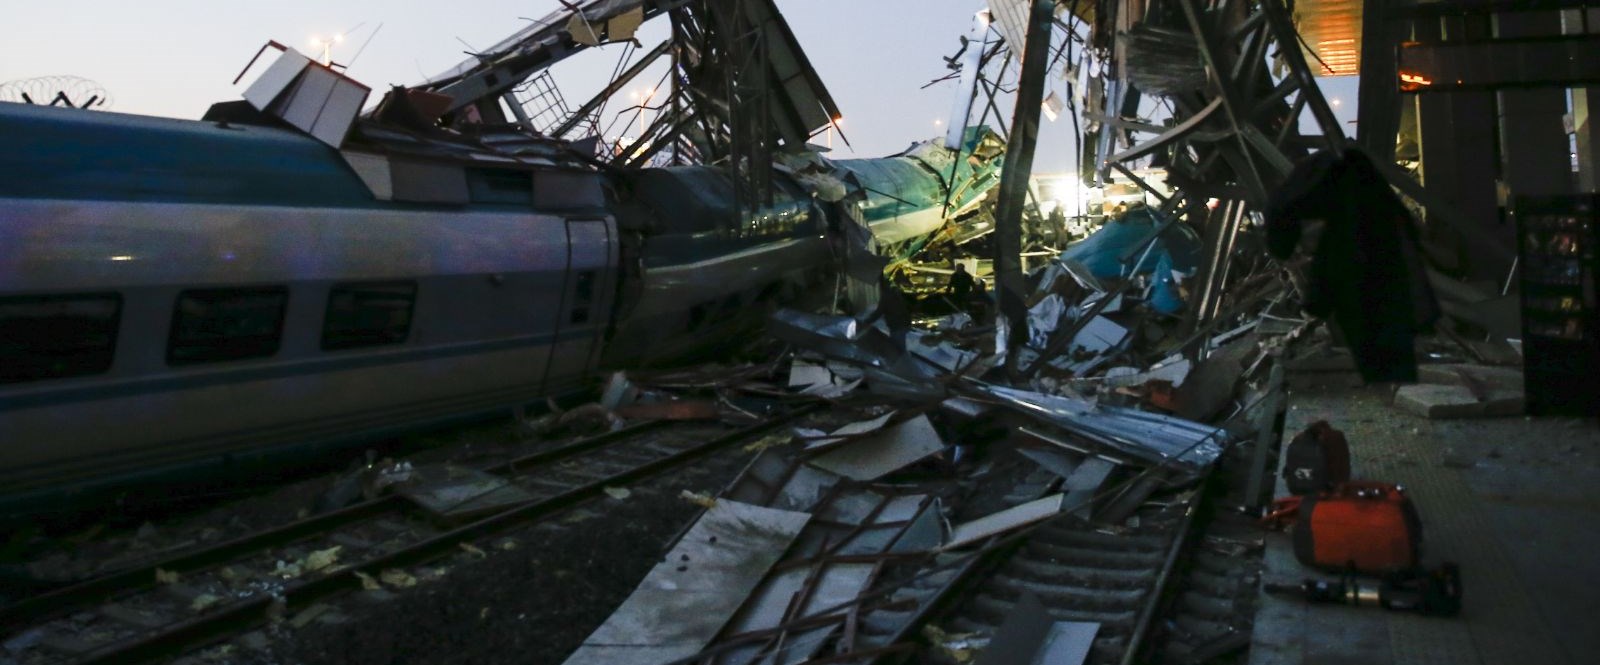 Ankara’da Yüksek Hızlı Tren kazası: 9 kişi hayatını kaybetti, 84 kişi yaralandı